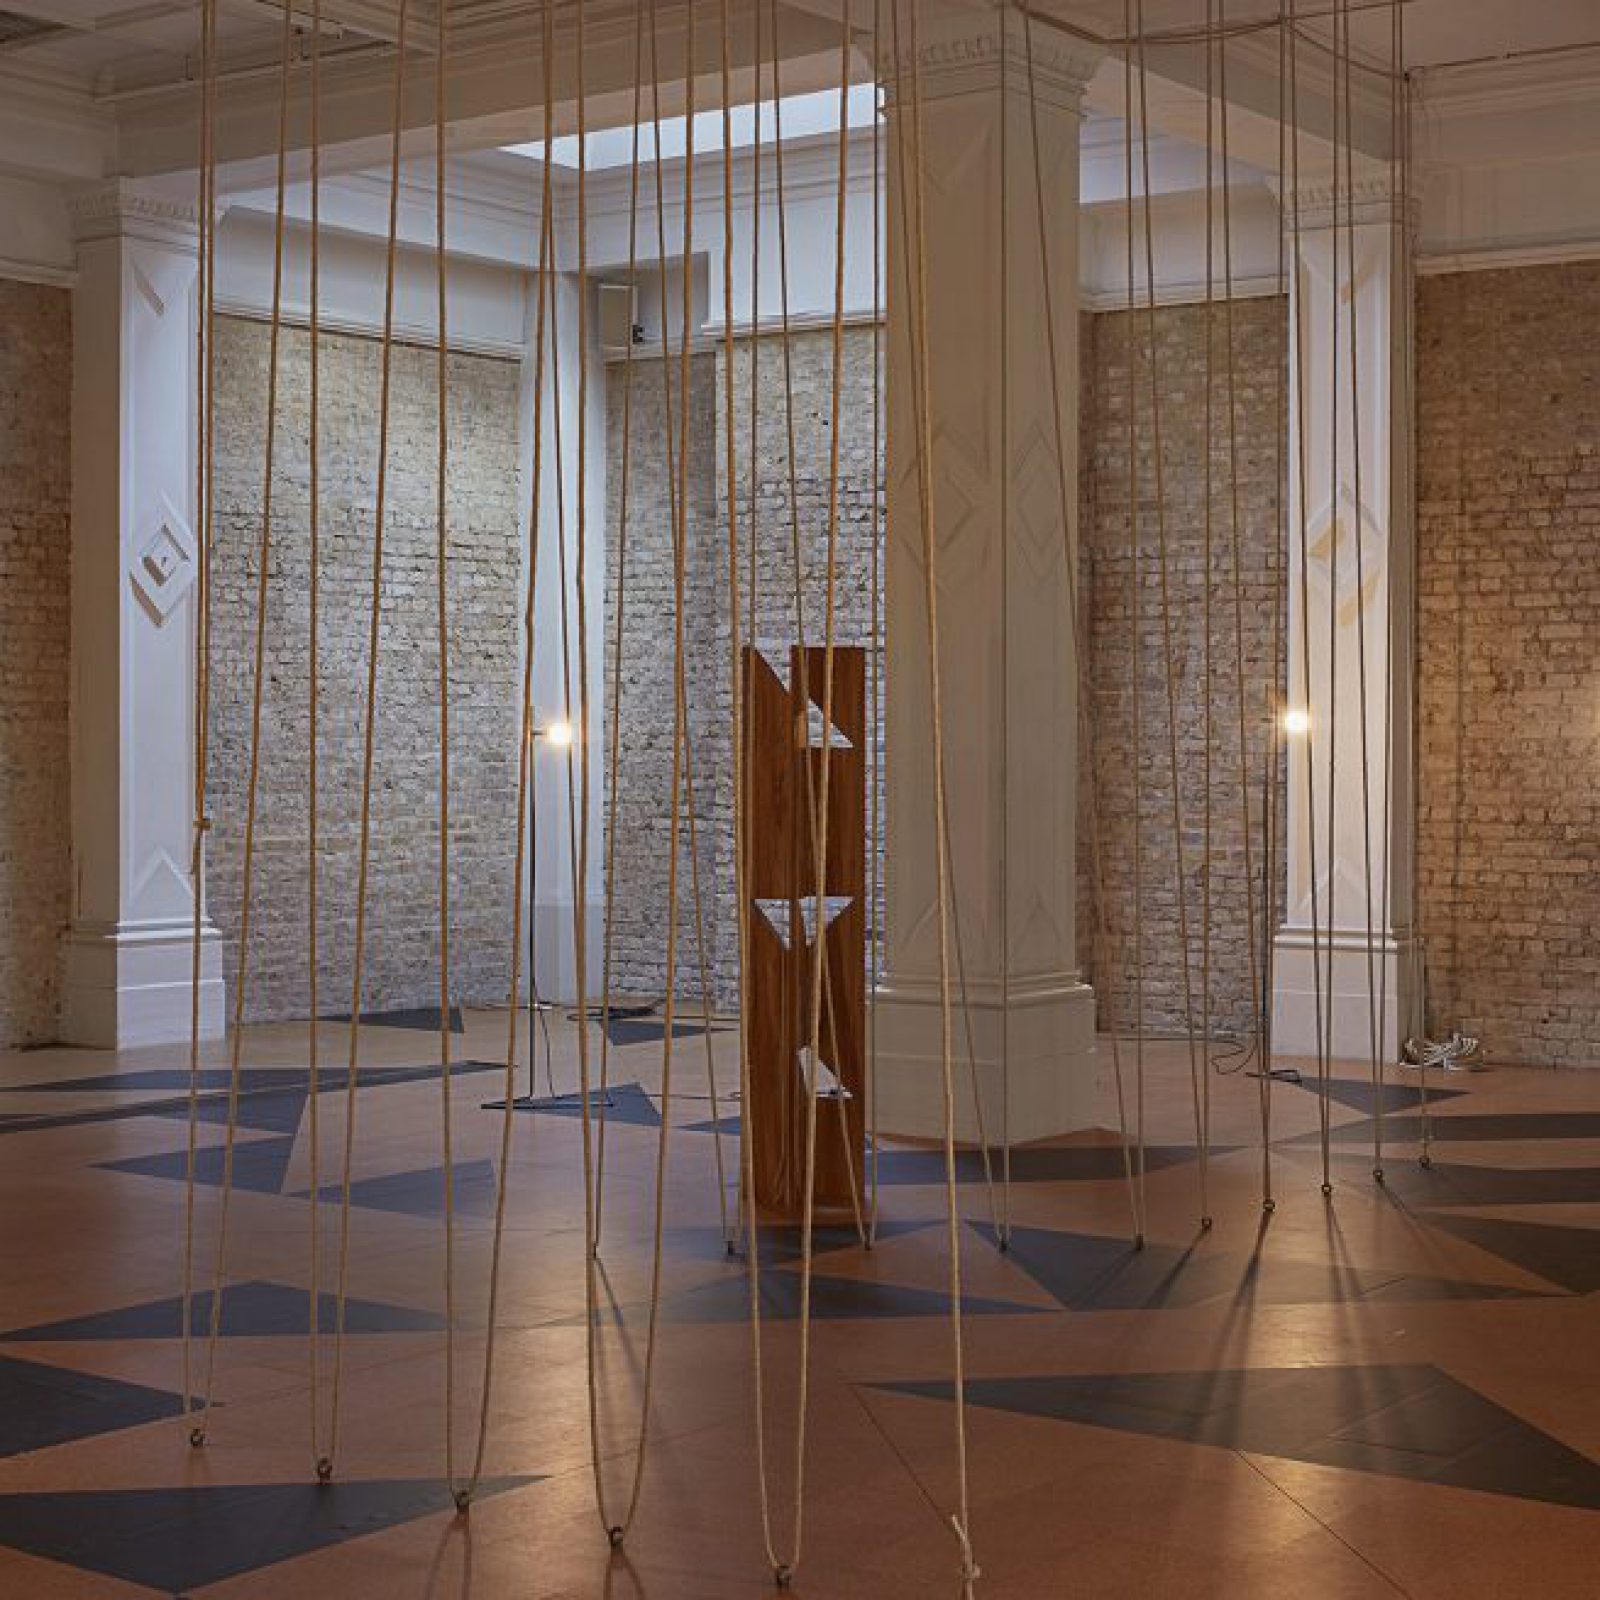 Leonor Antunes, Whitechapel Gallery, Londres, 2017-2018